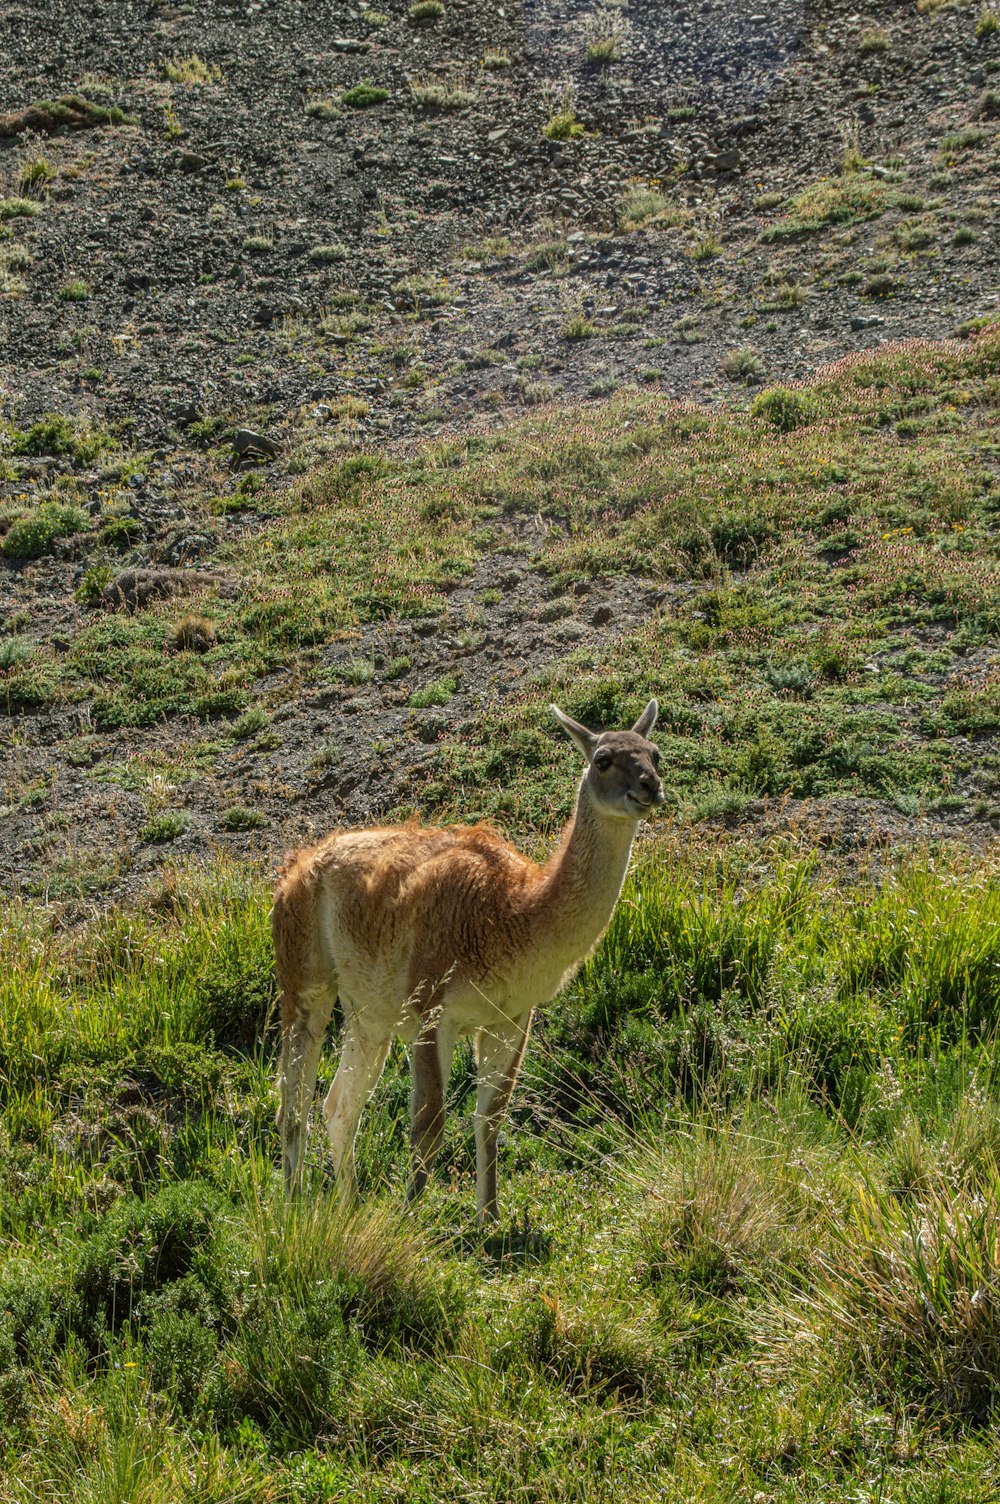 昼間の緑の草原に浮かぶ茶色と白の4本足の動物